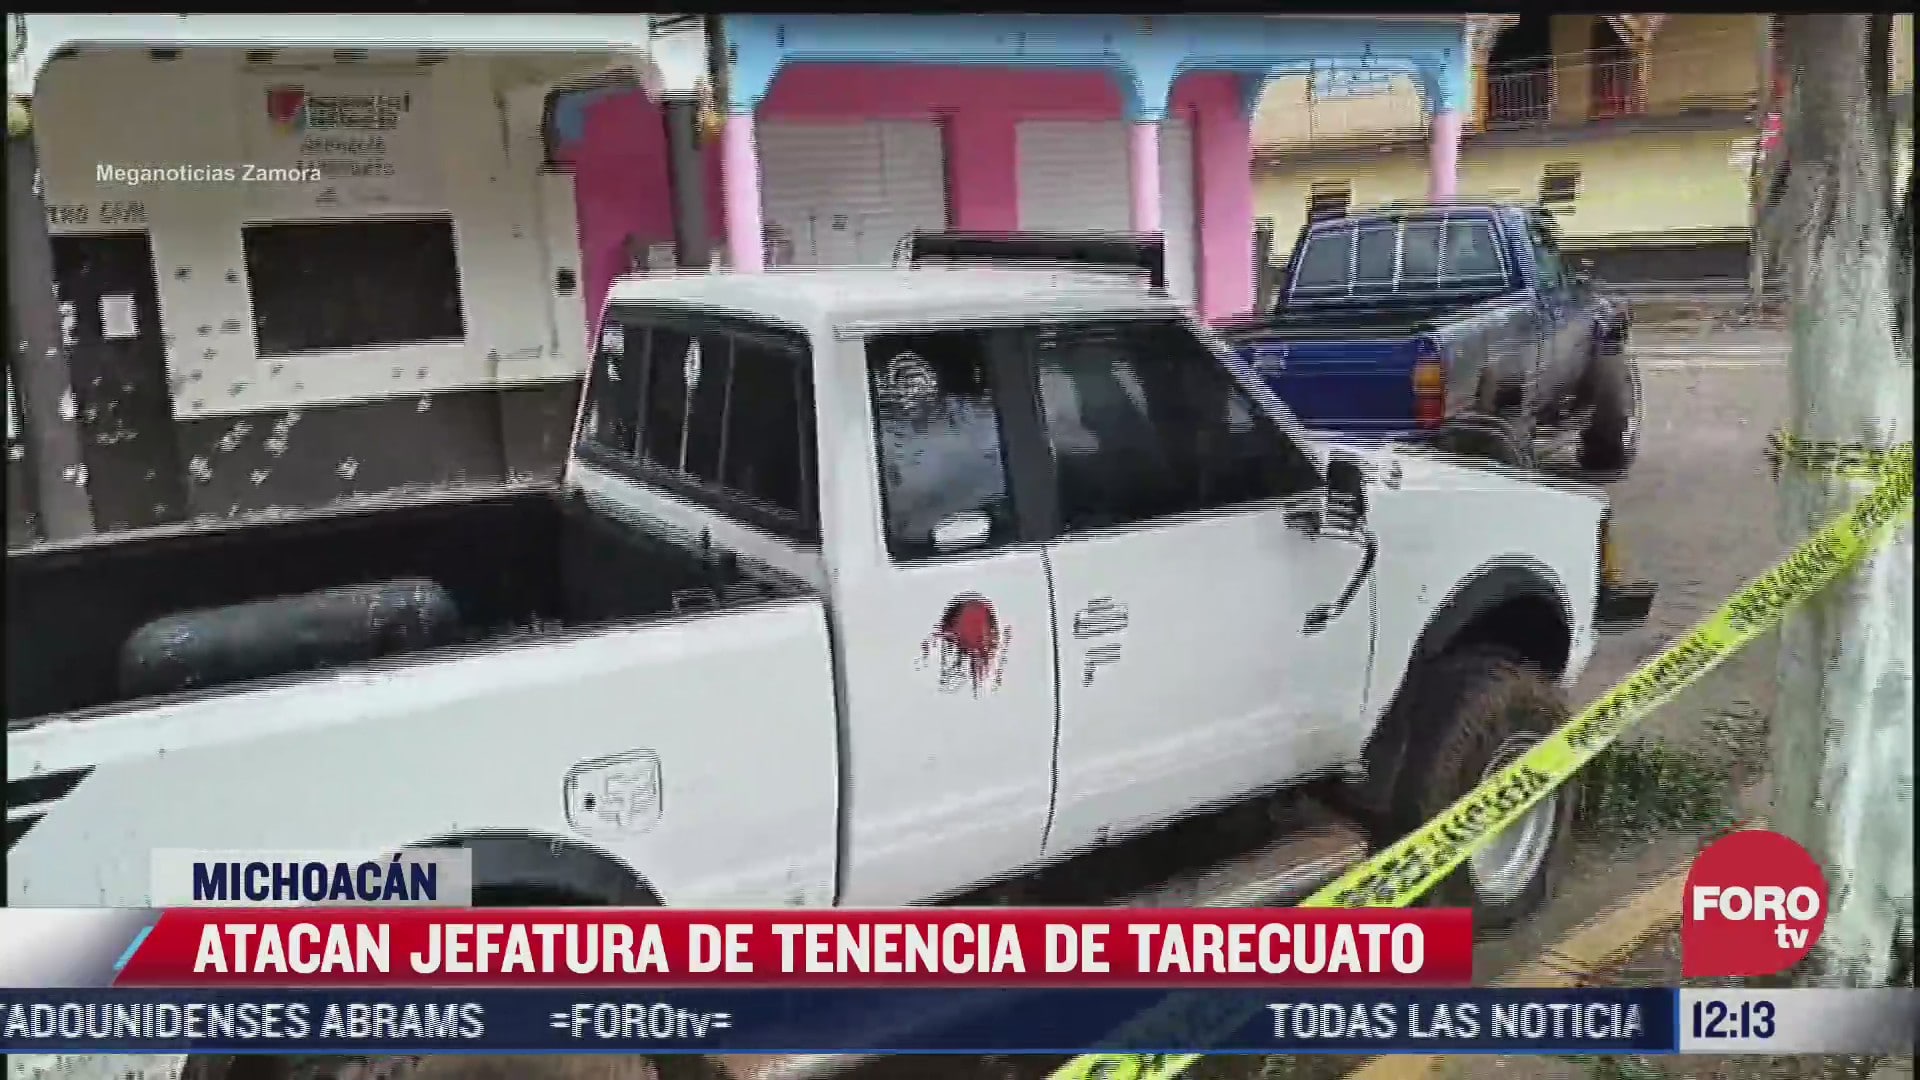 comando armado ataca jefatura de tarecuato en michoacan